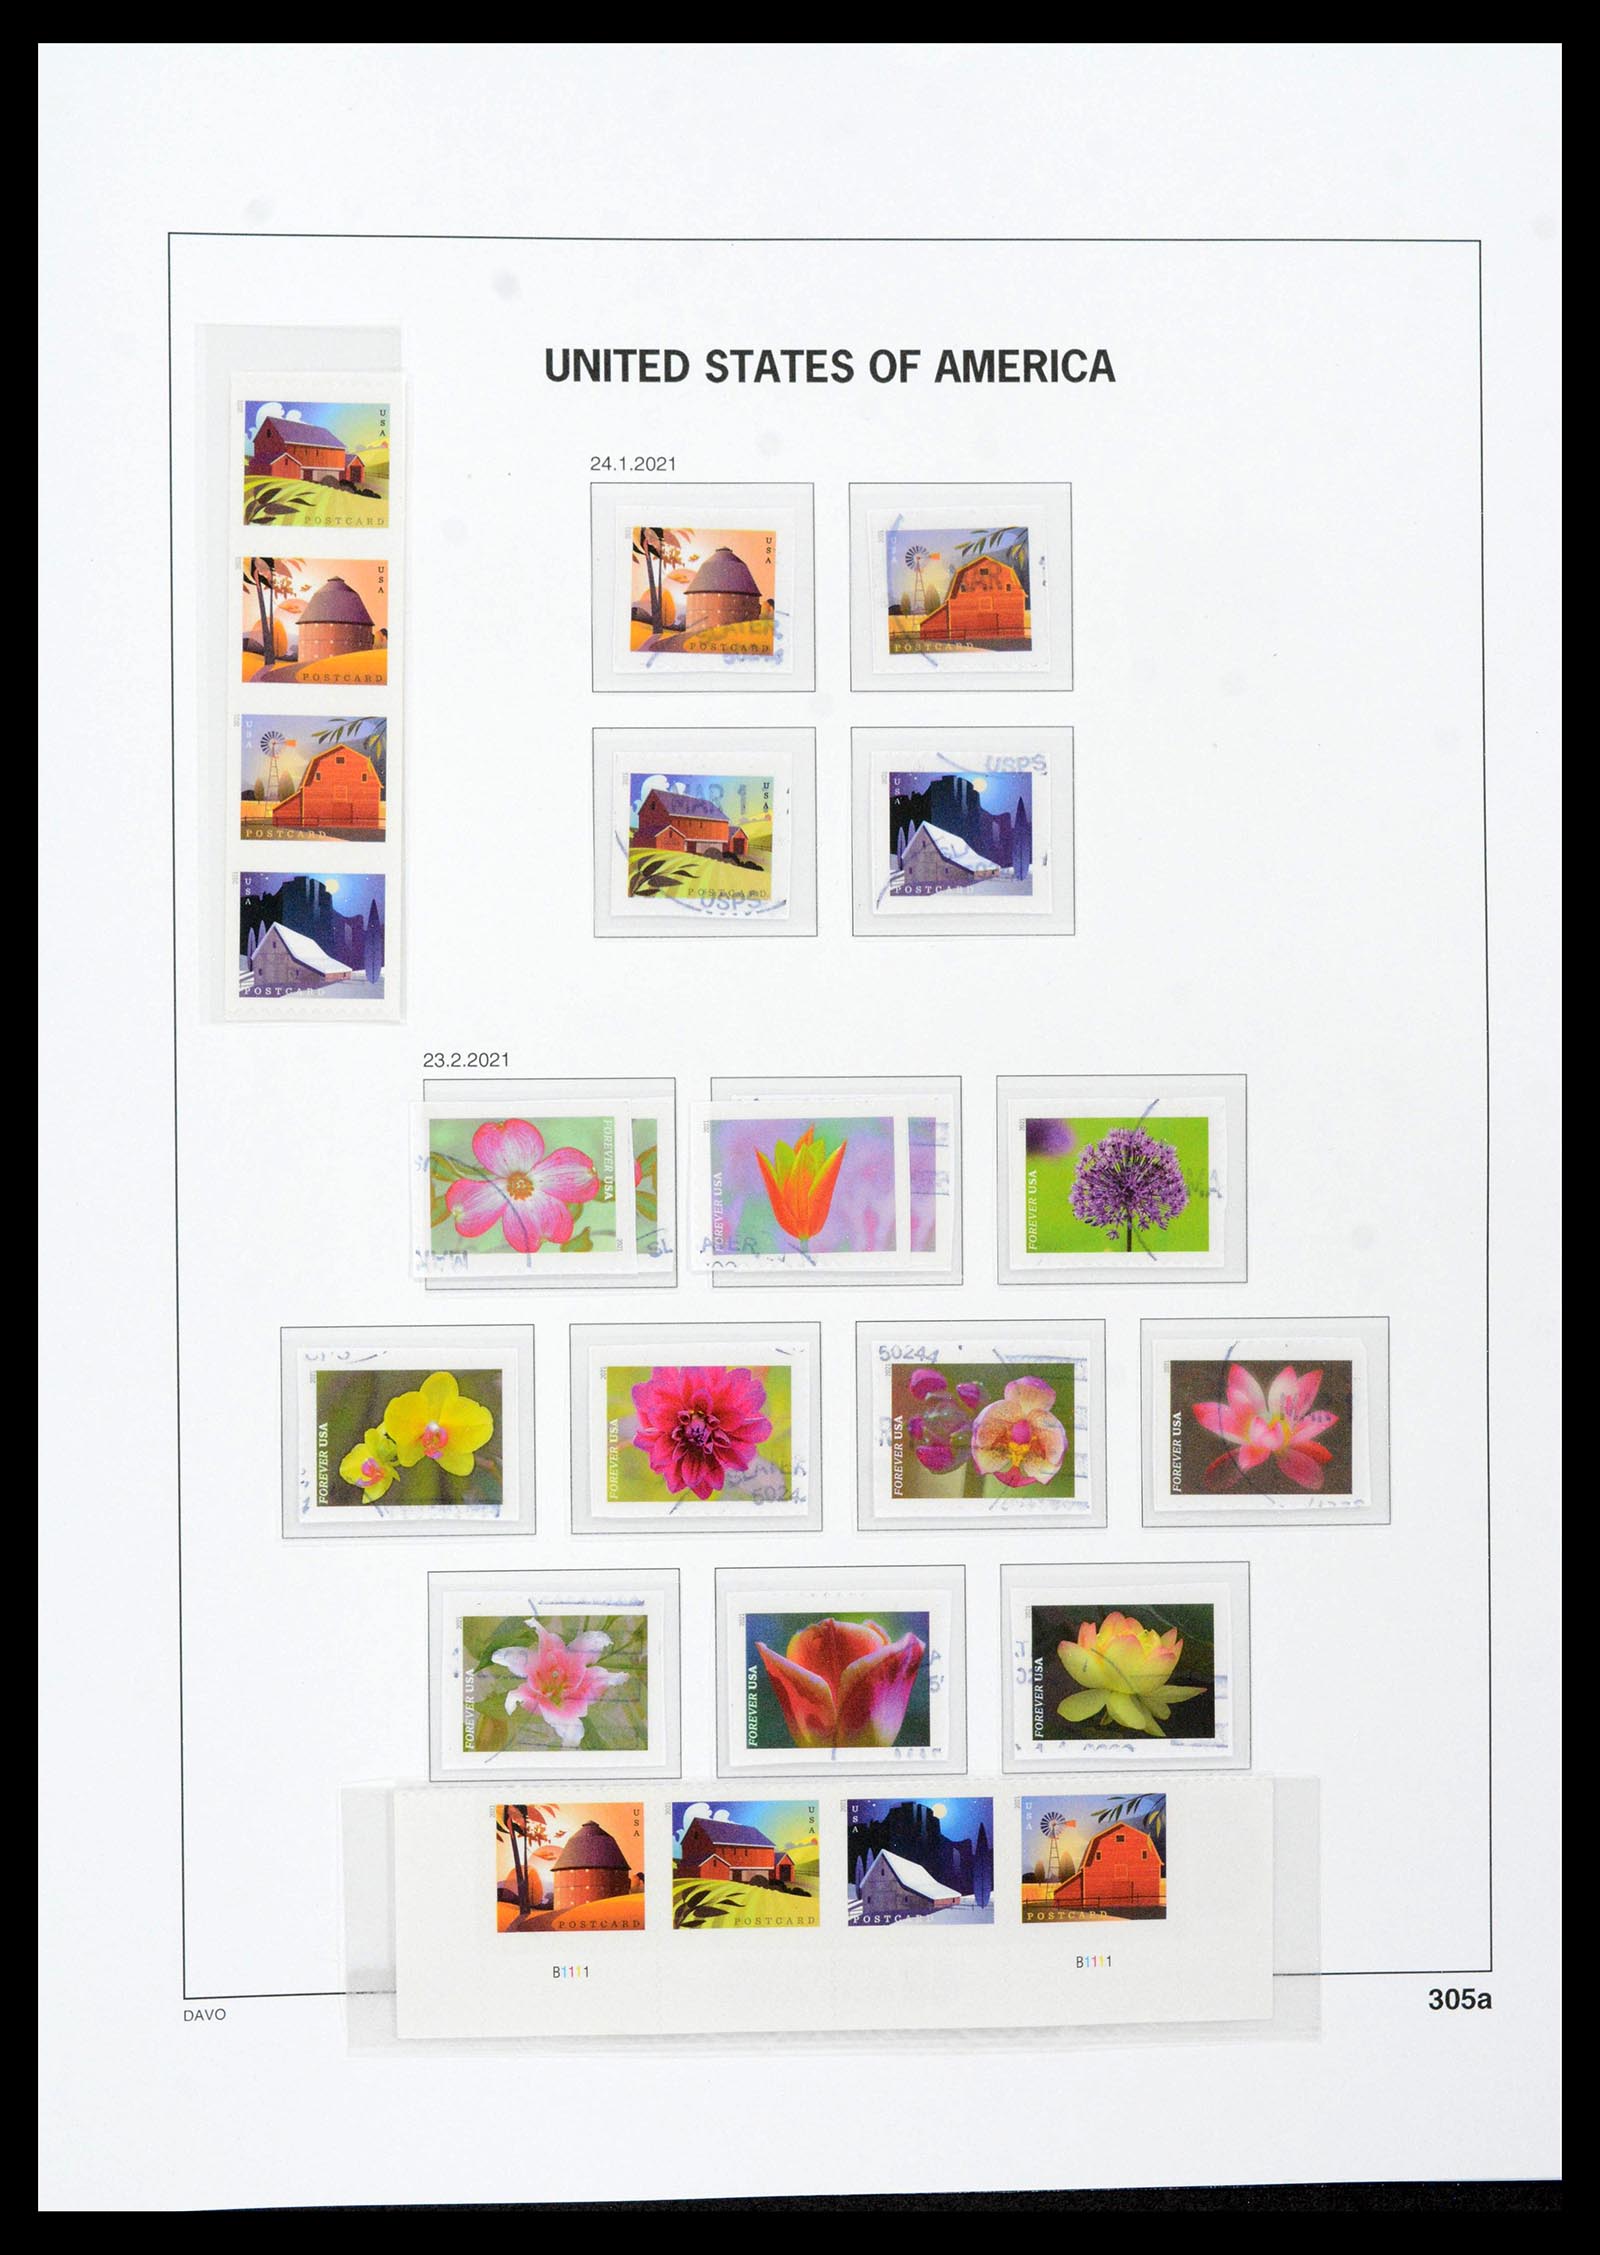 39349 0461 - Stamp collection 39349 USA 1989-2021!